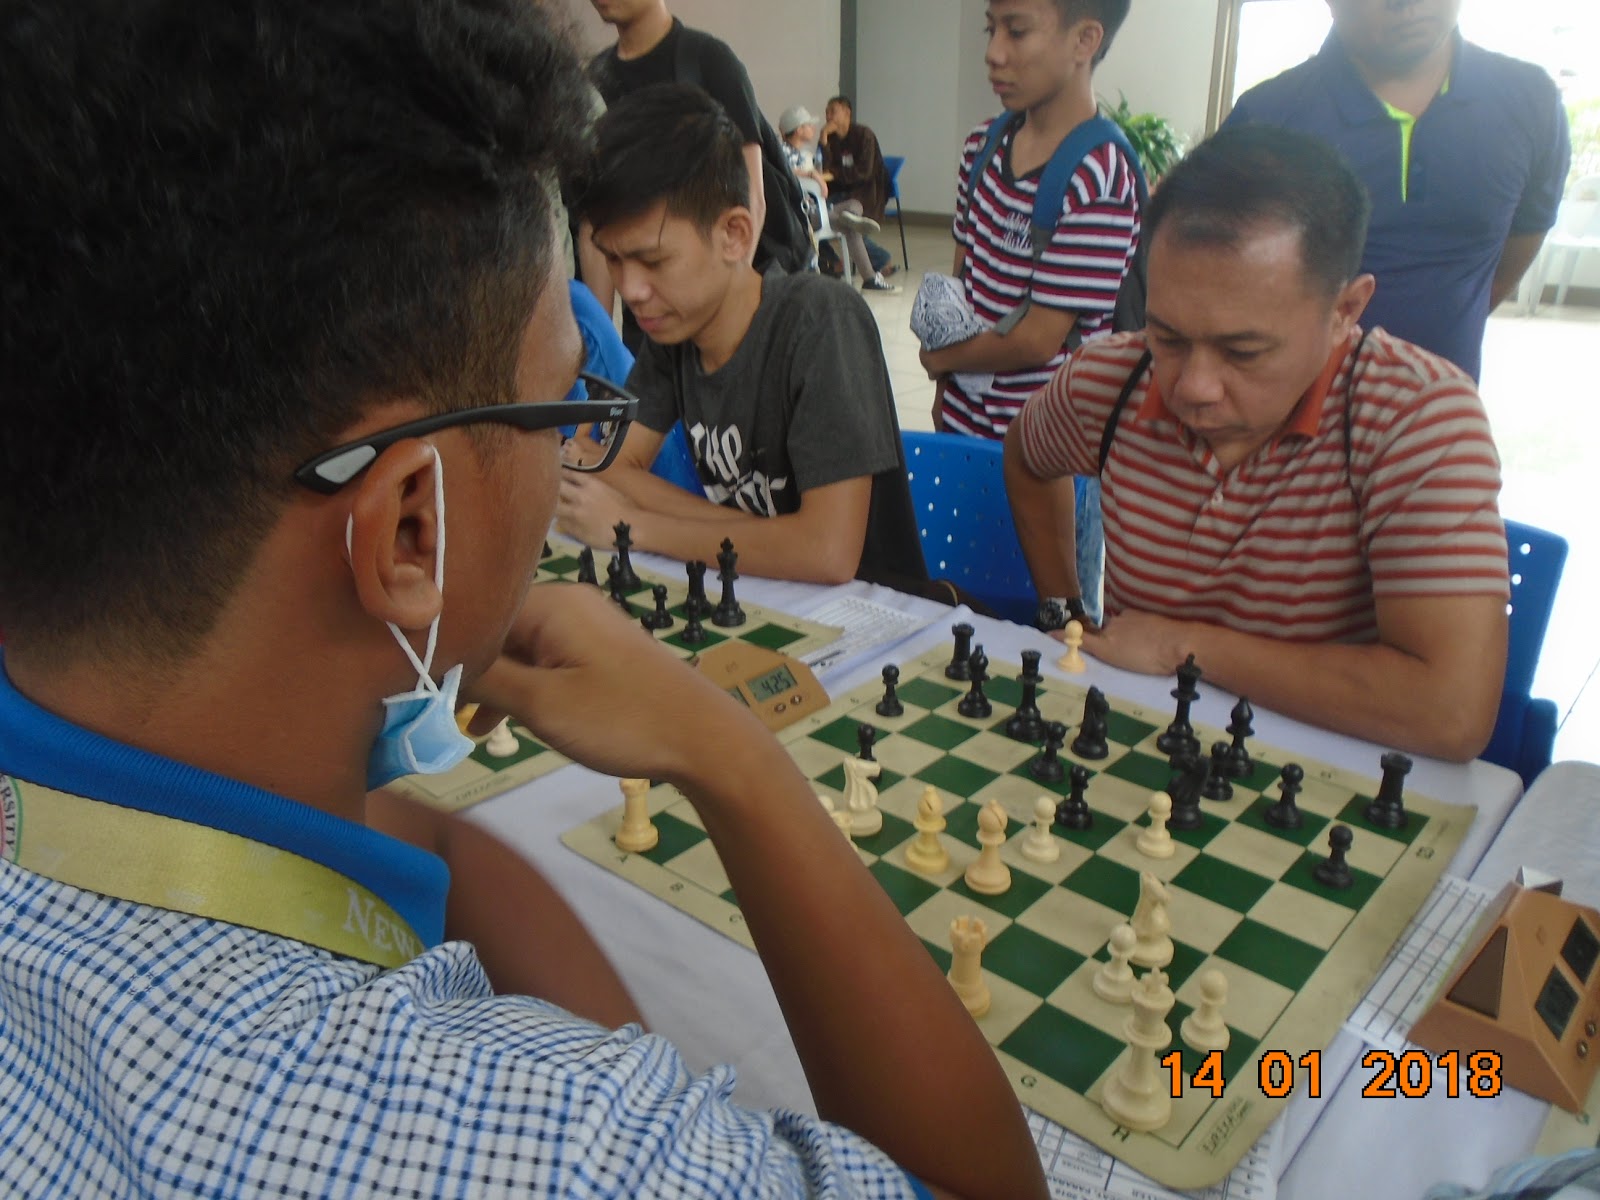 Philippine Blitz Chess Arena: PBCA LIVE BLITZ RATING February 17,2018